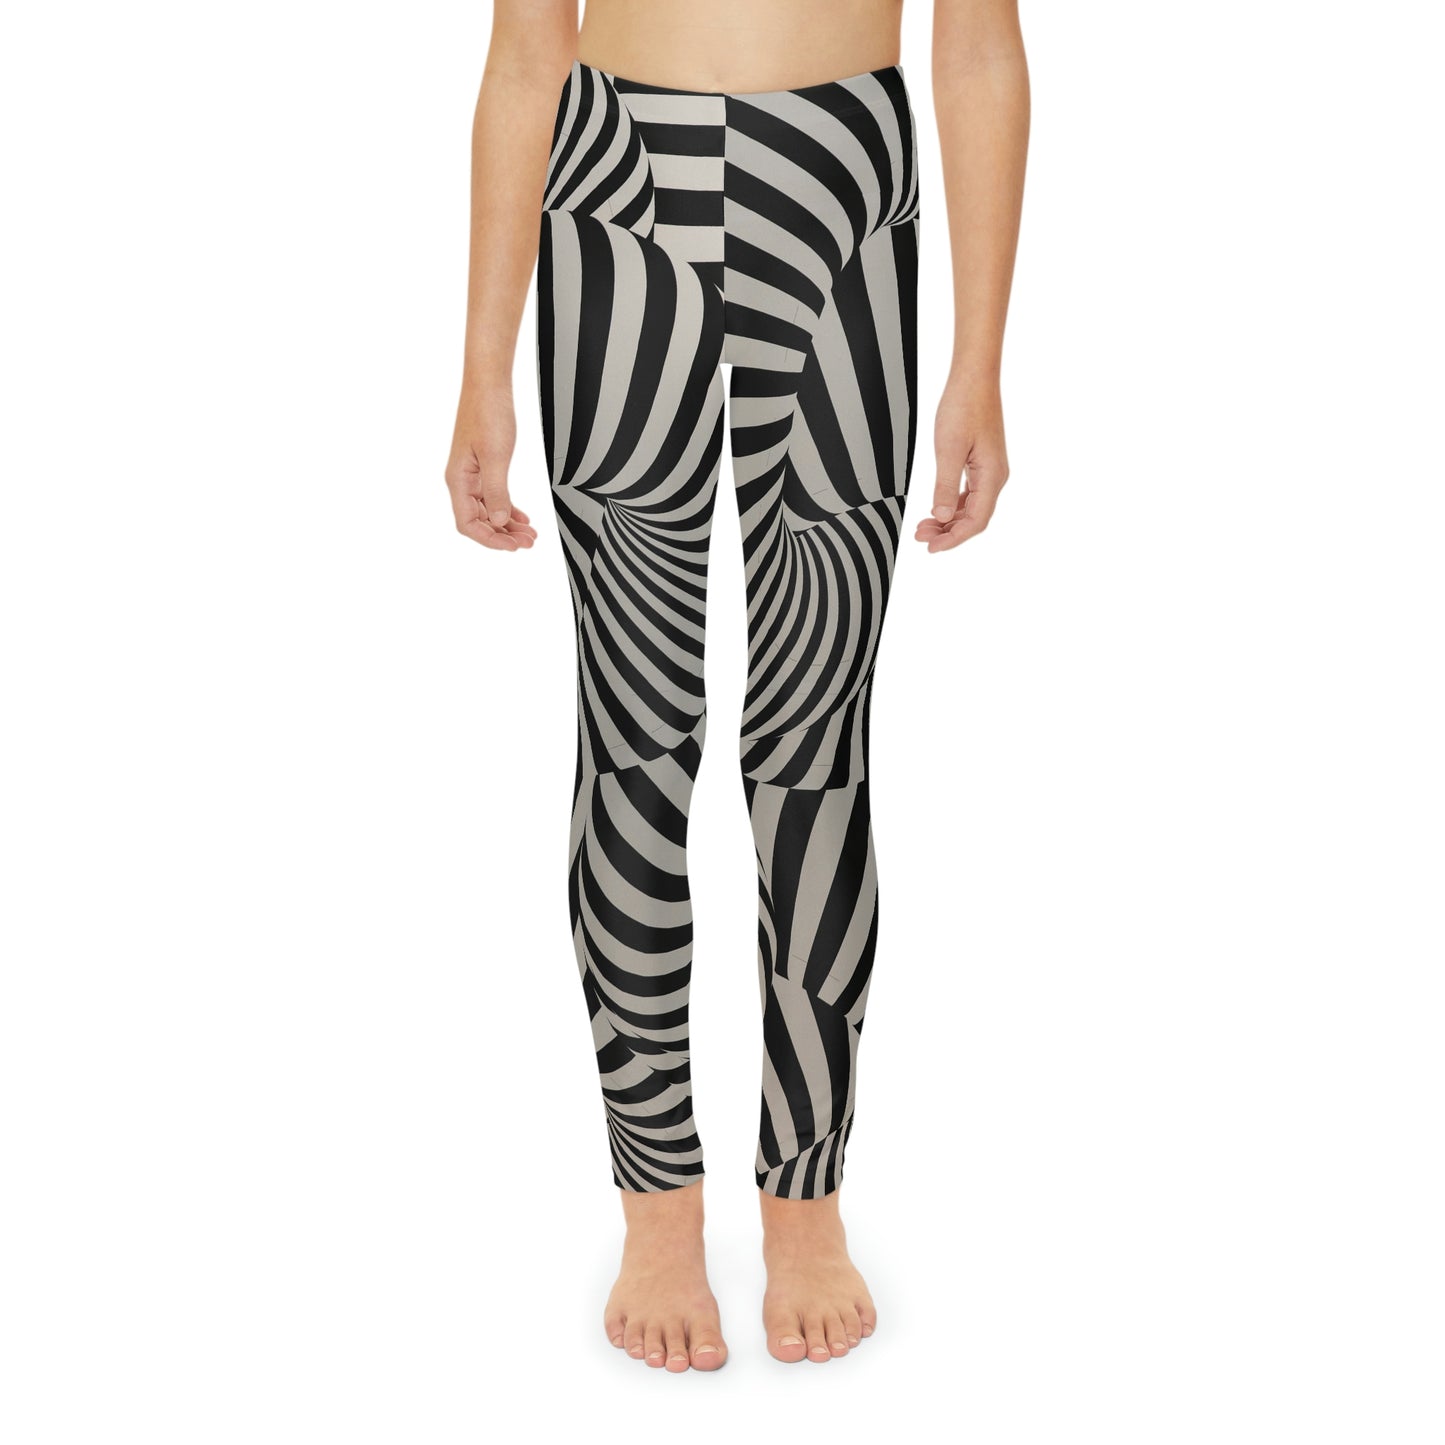 Zebra Youth Full-Length Leggings